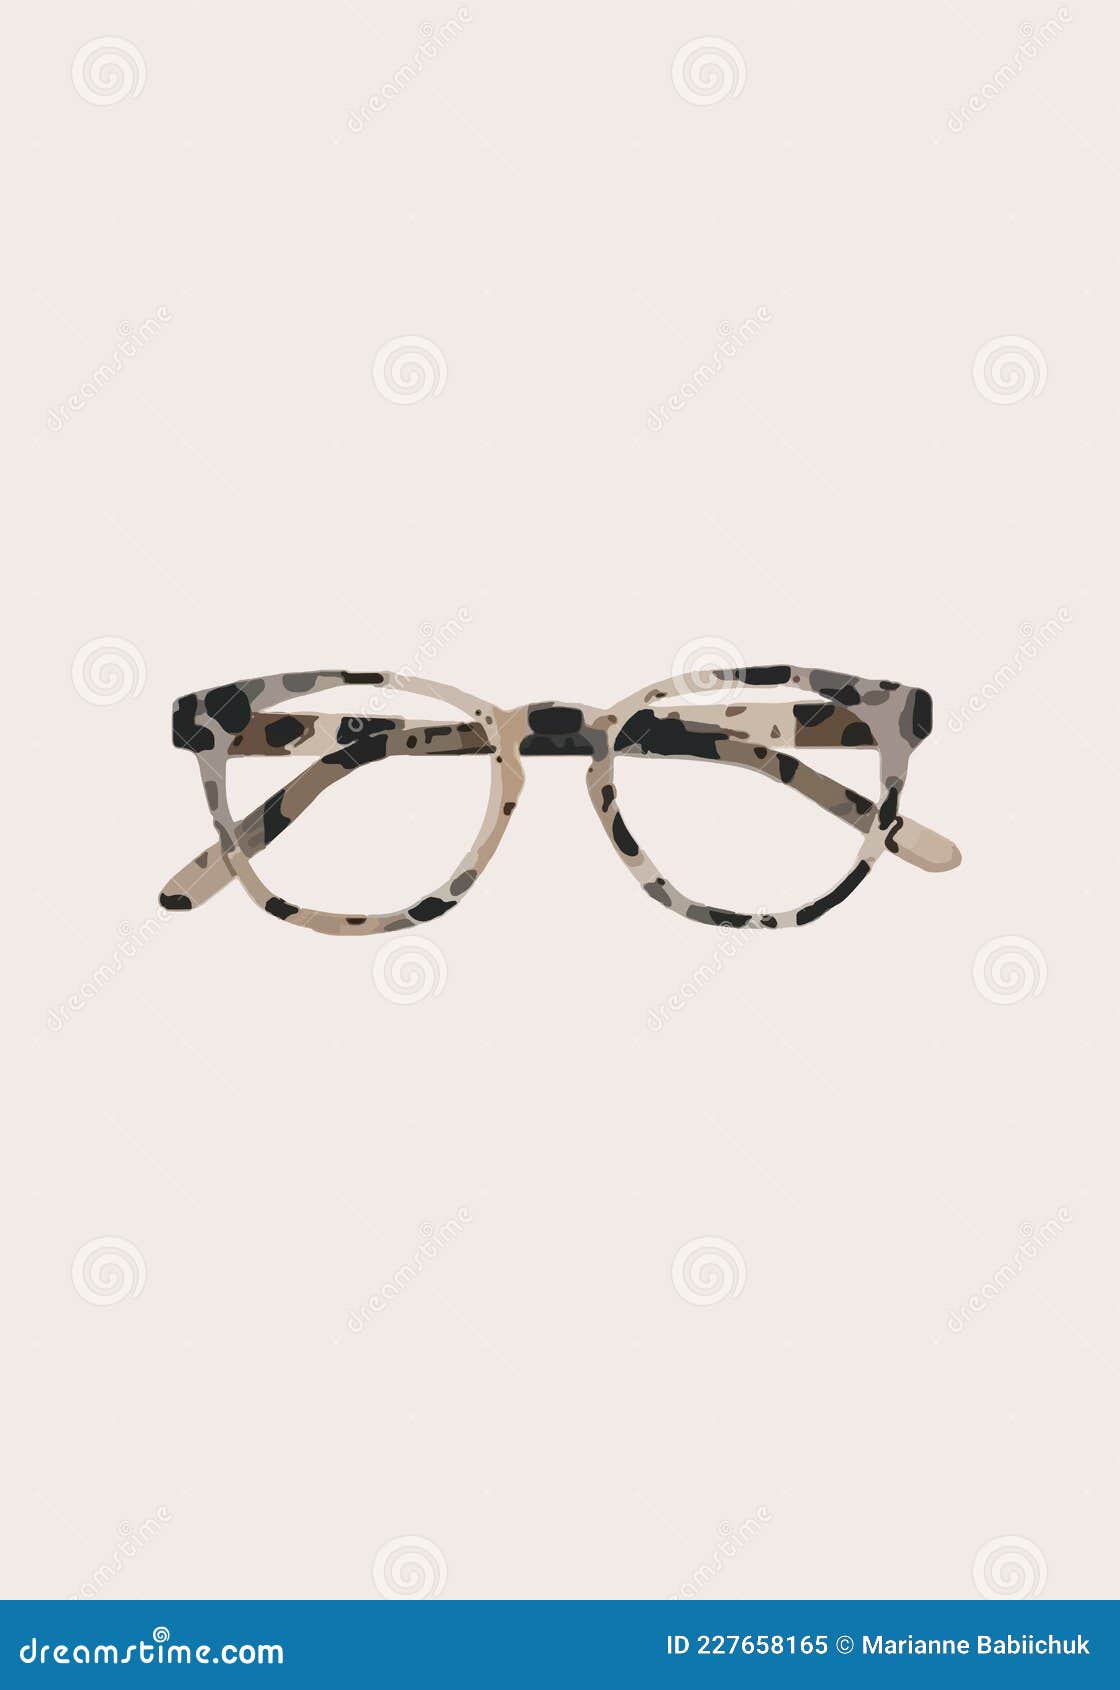 tiger-rimmed glasses.  